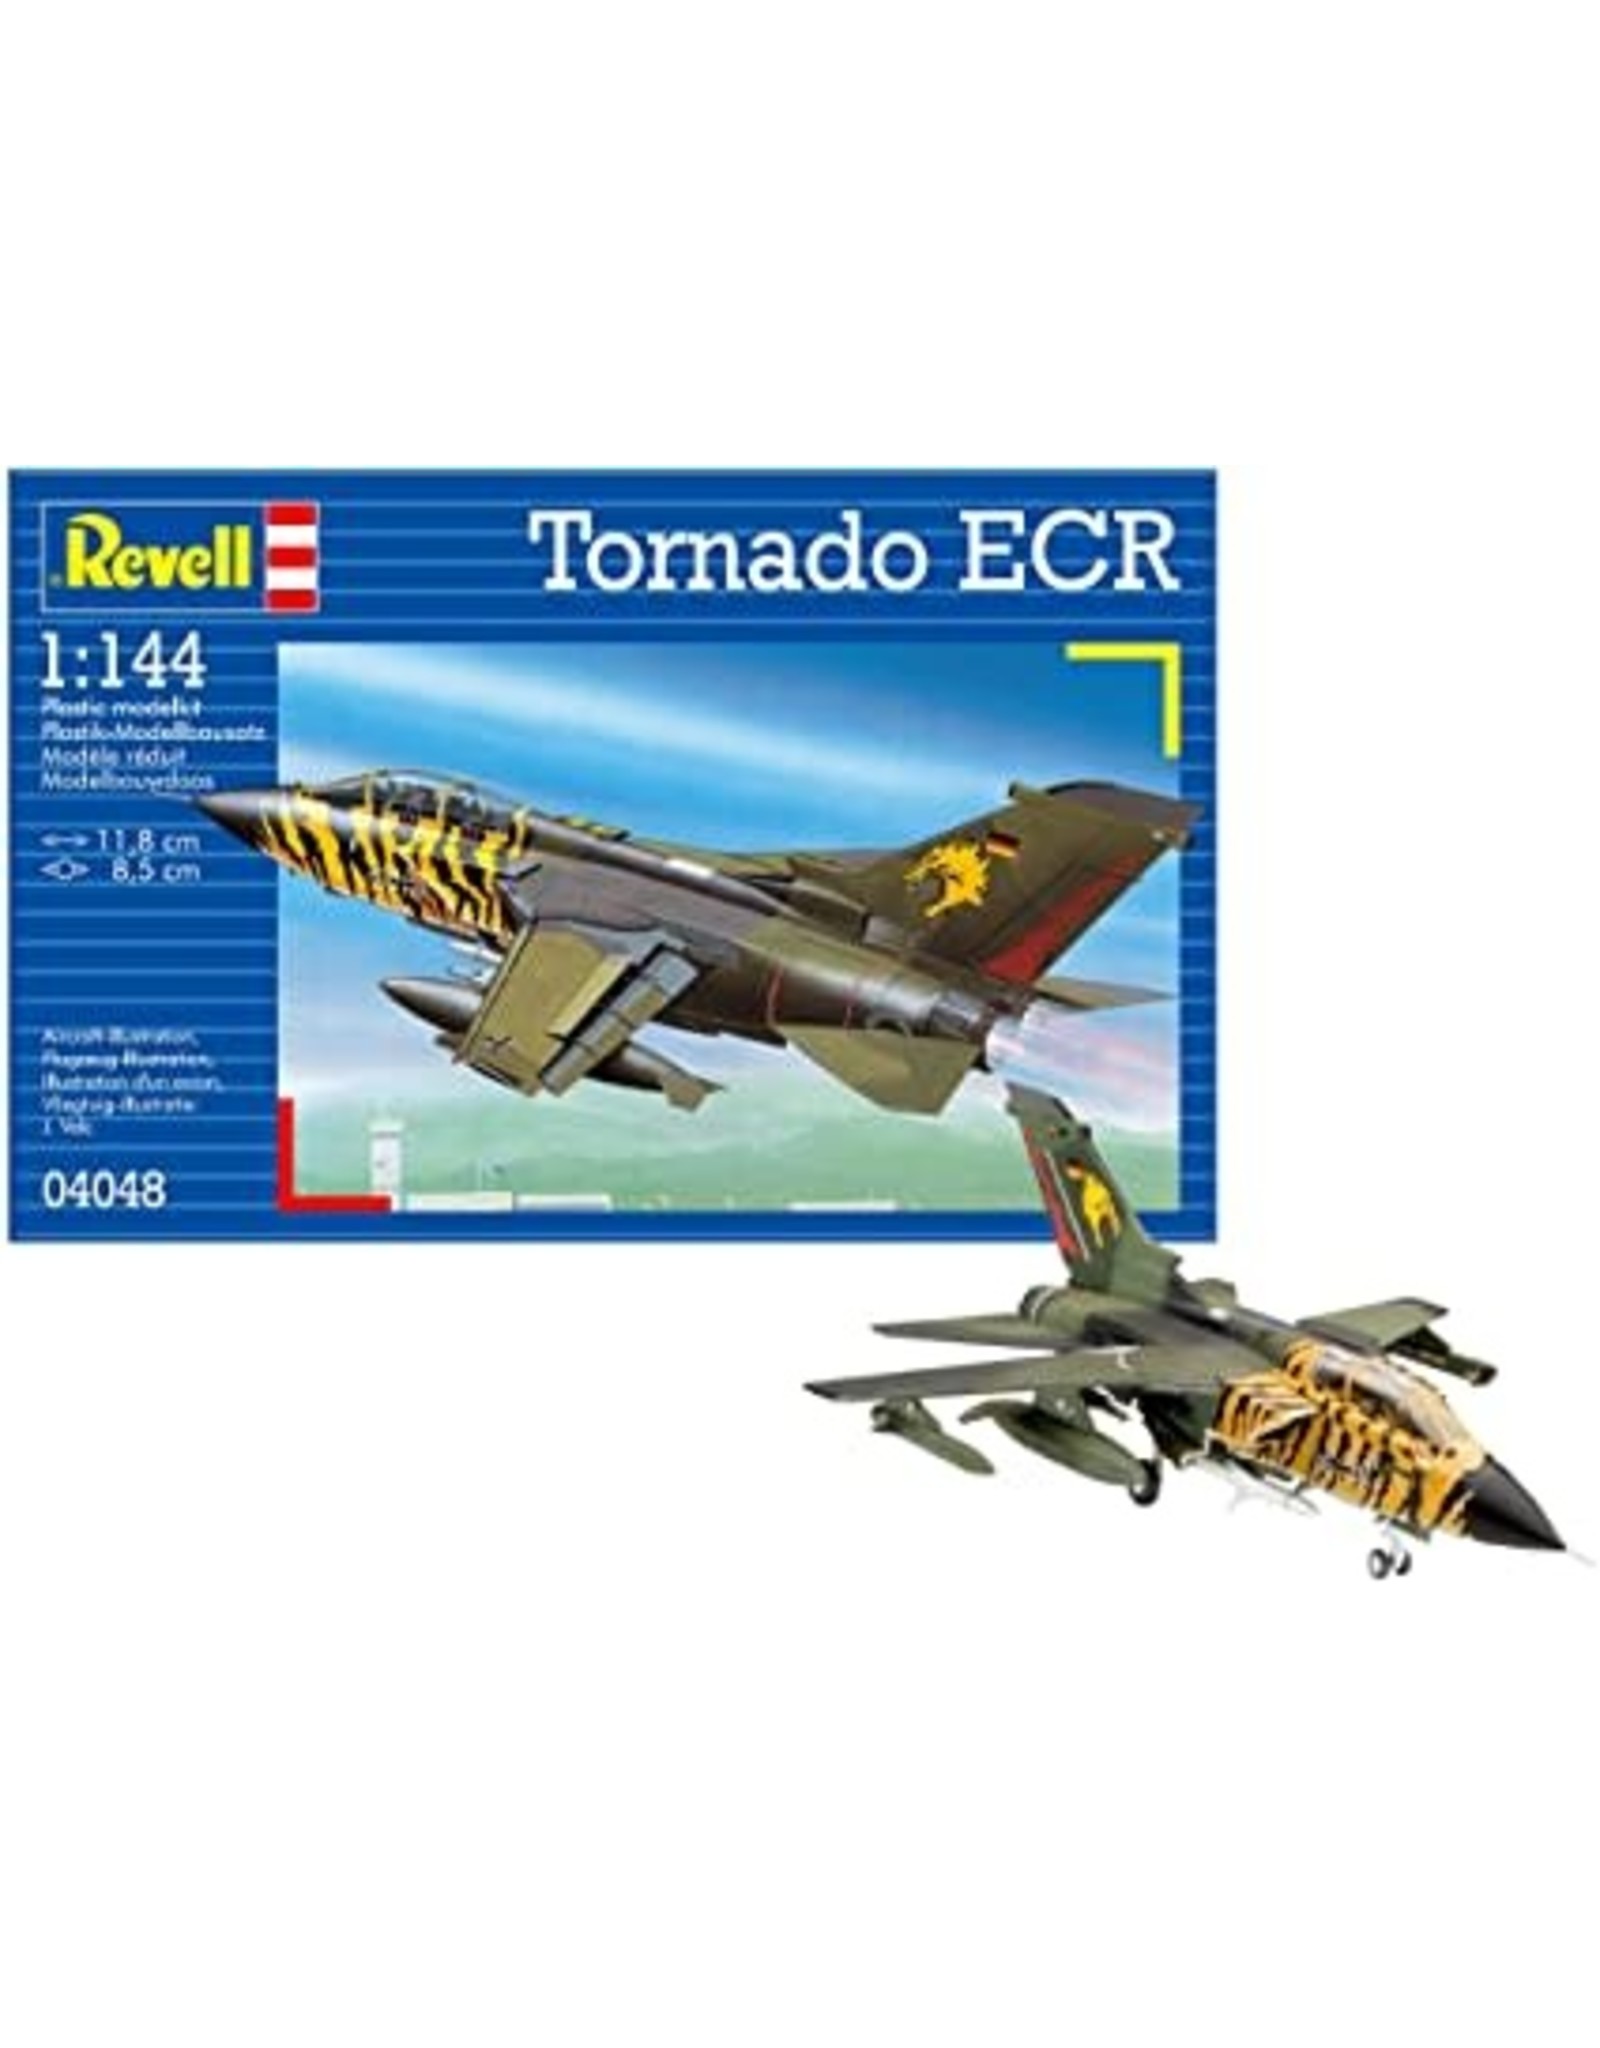 Revell Tornado ECR